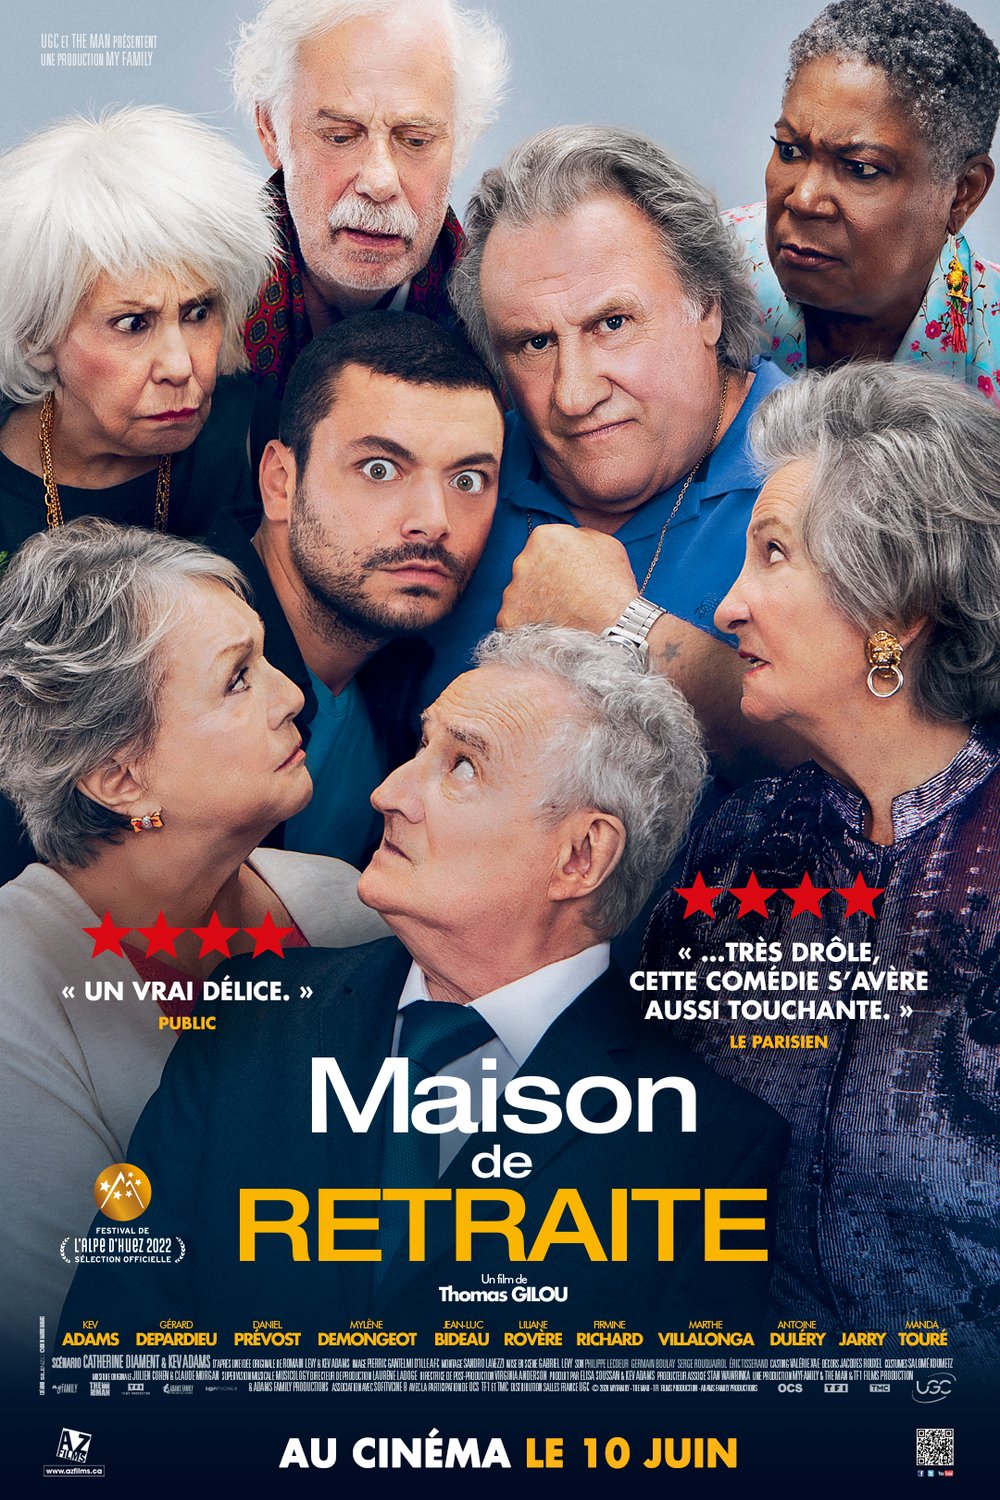 Poster of the movie Maison de retraite